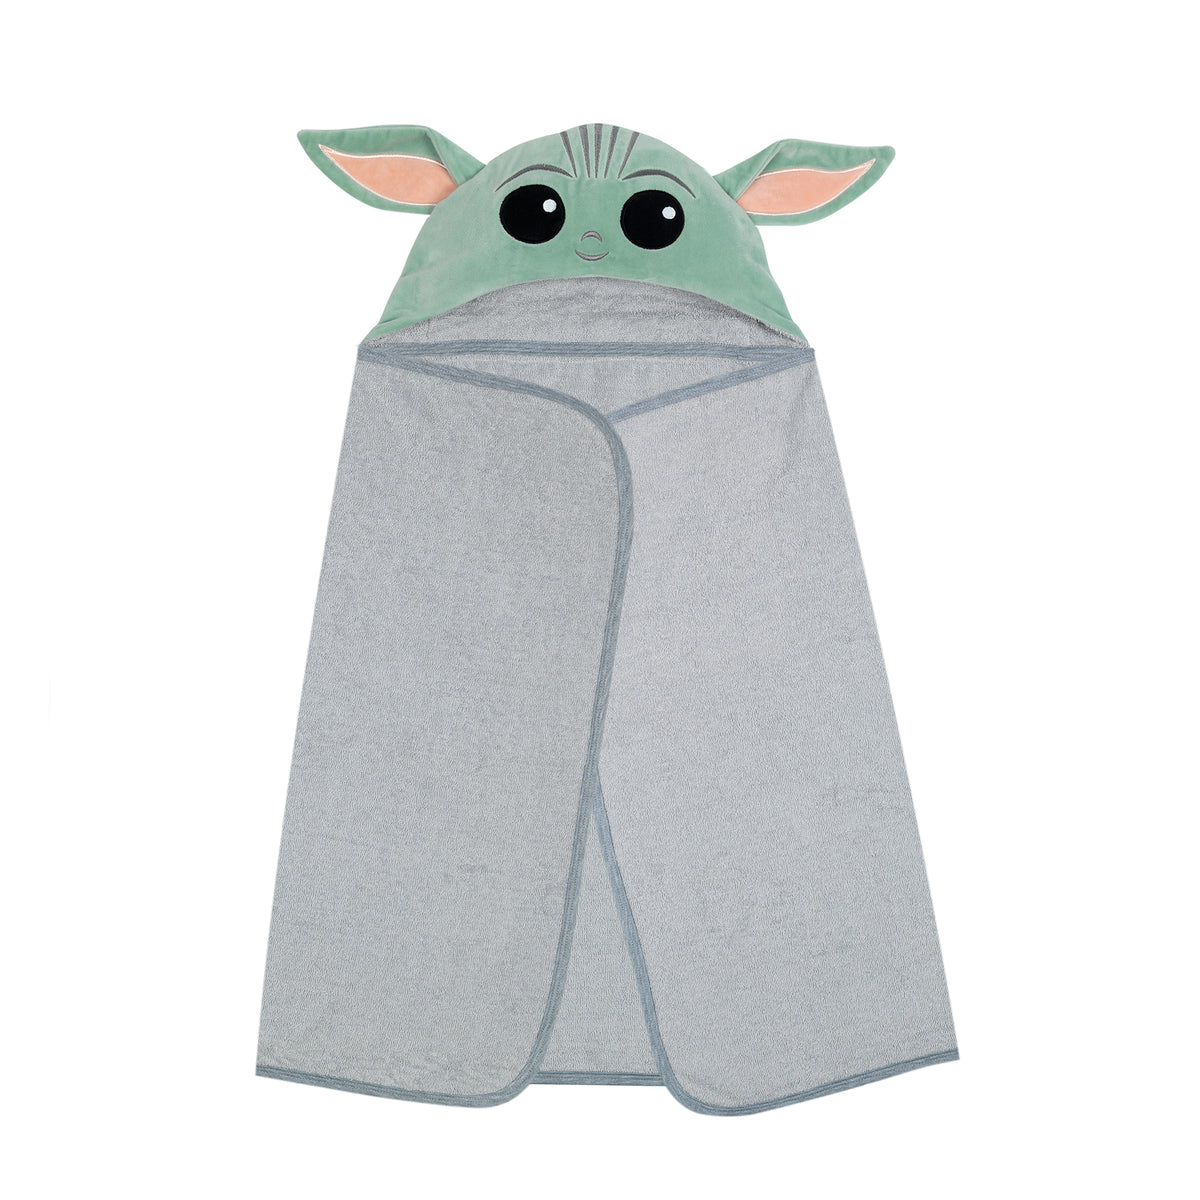 Star Wars 100% Cotton Kitchen Towels